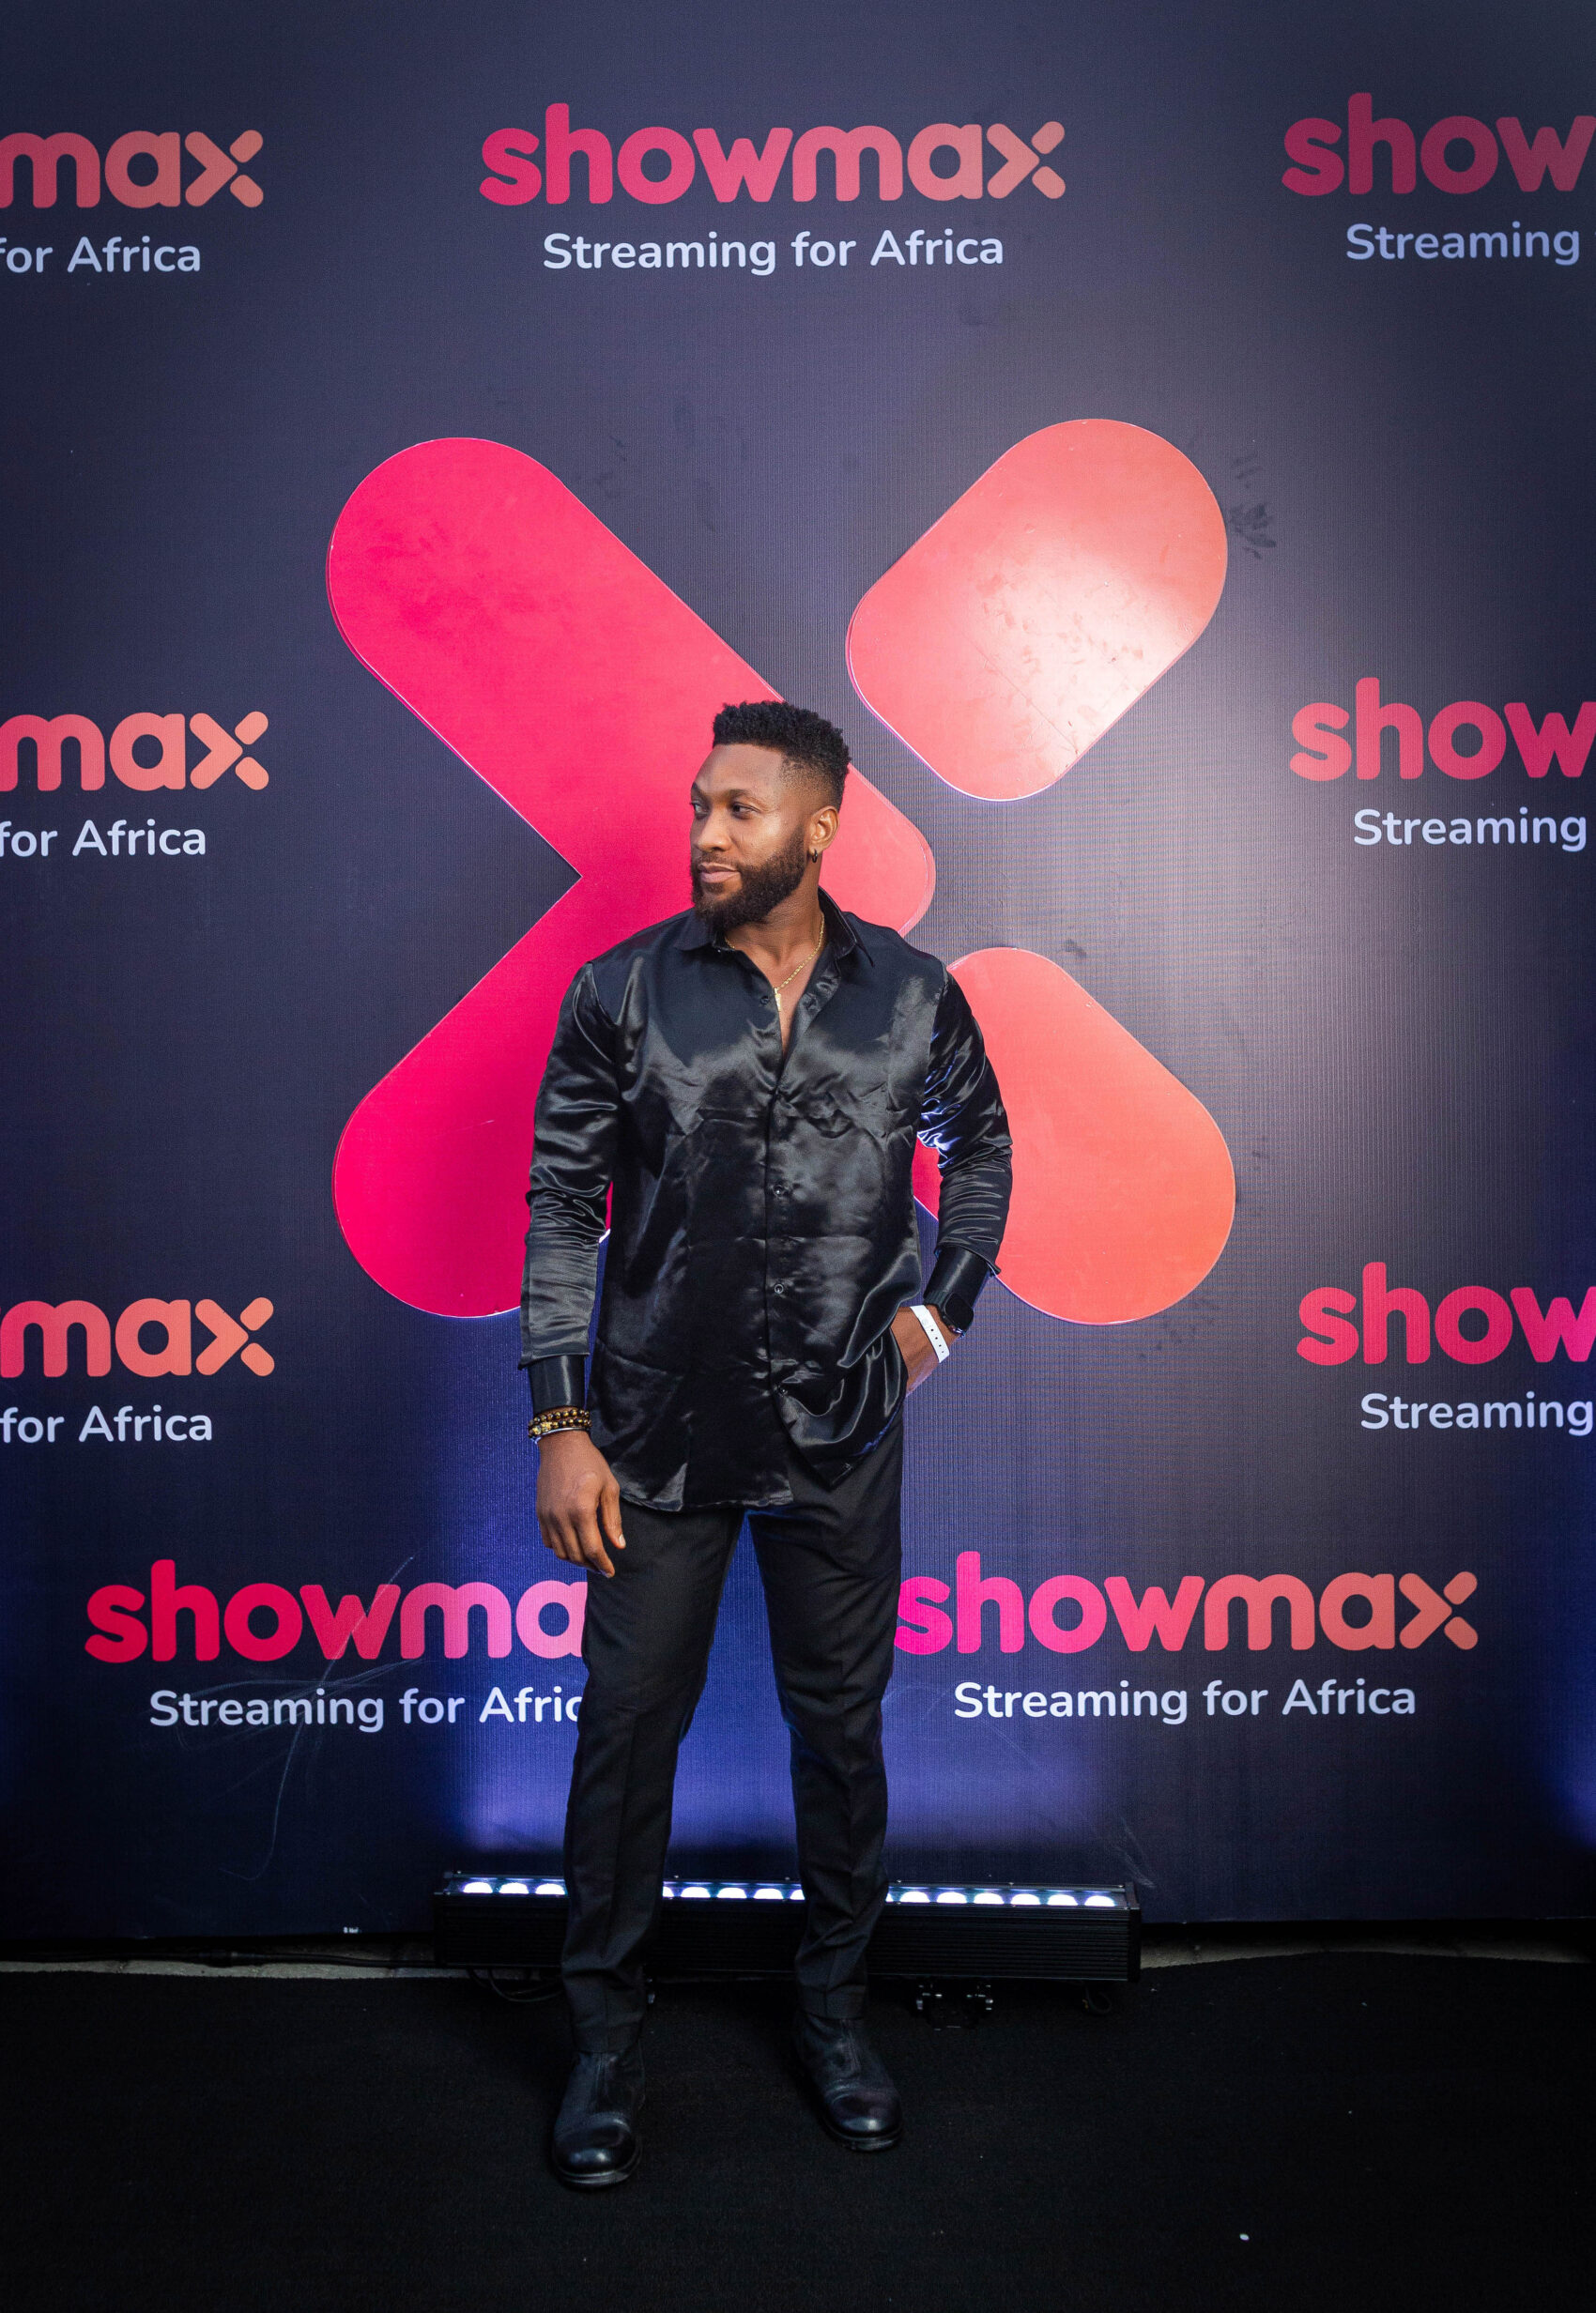 Kingsley Nwachukwu on New Showmax and Cheta M